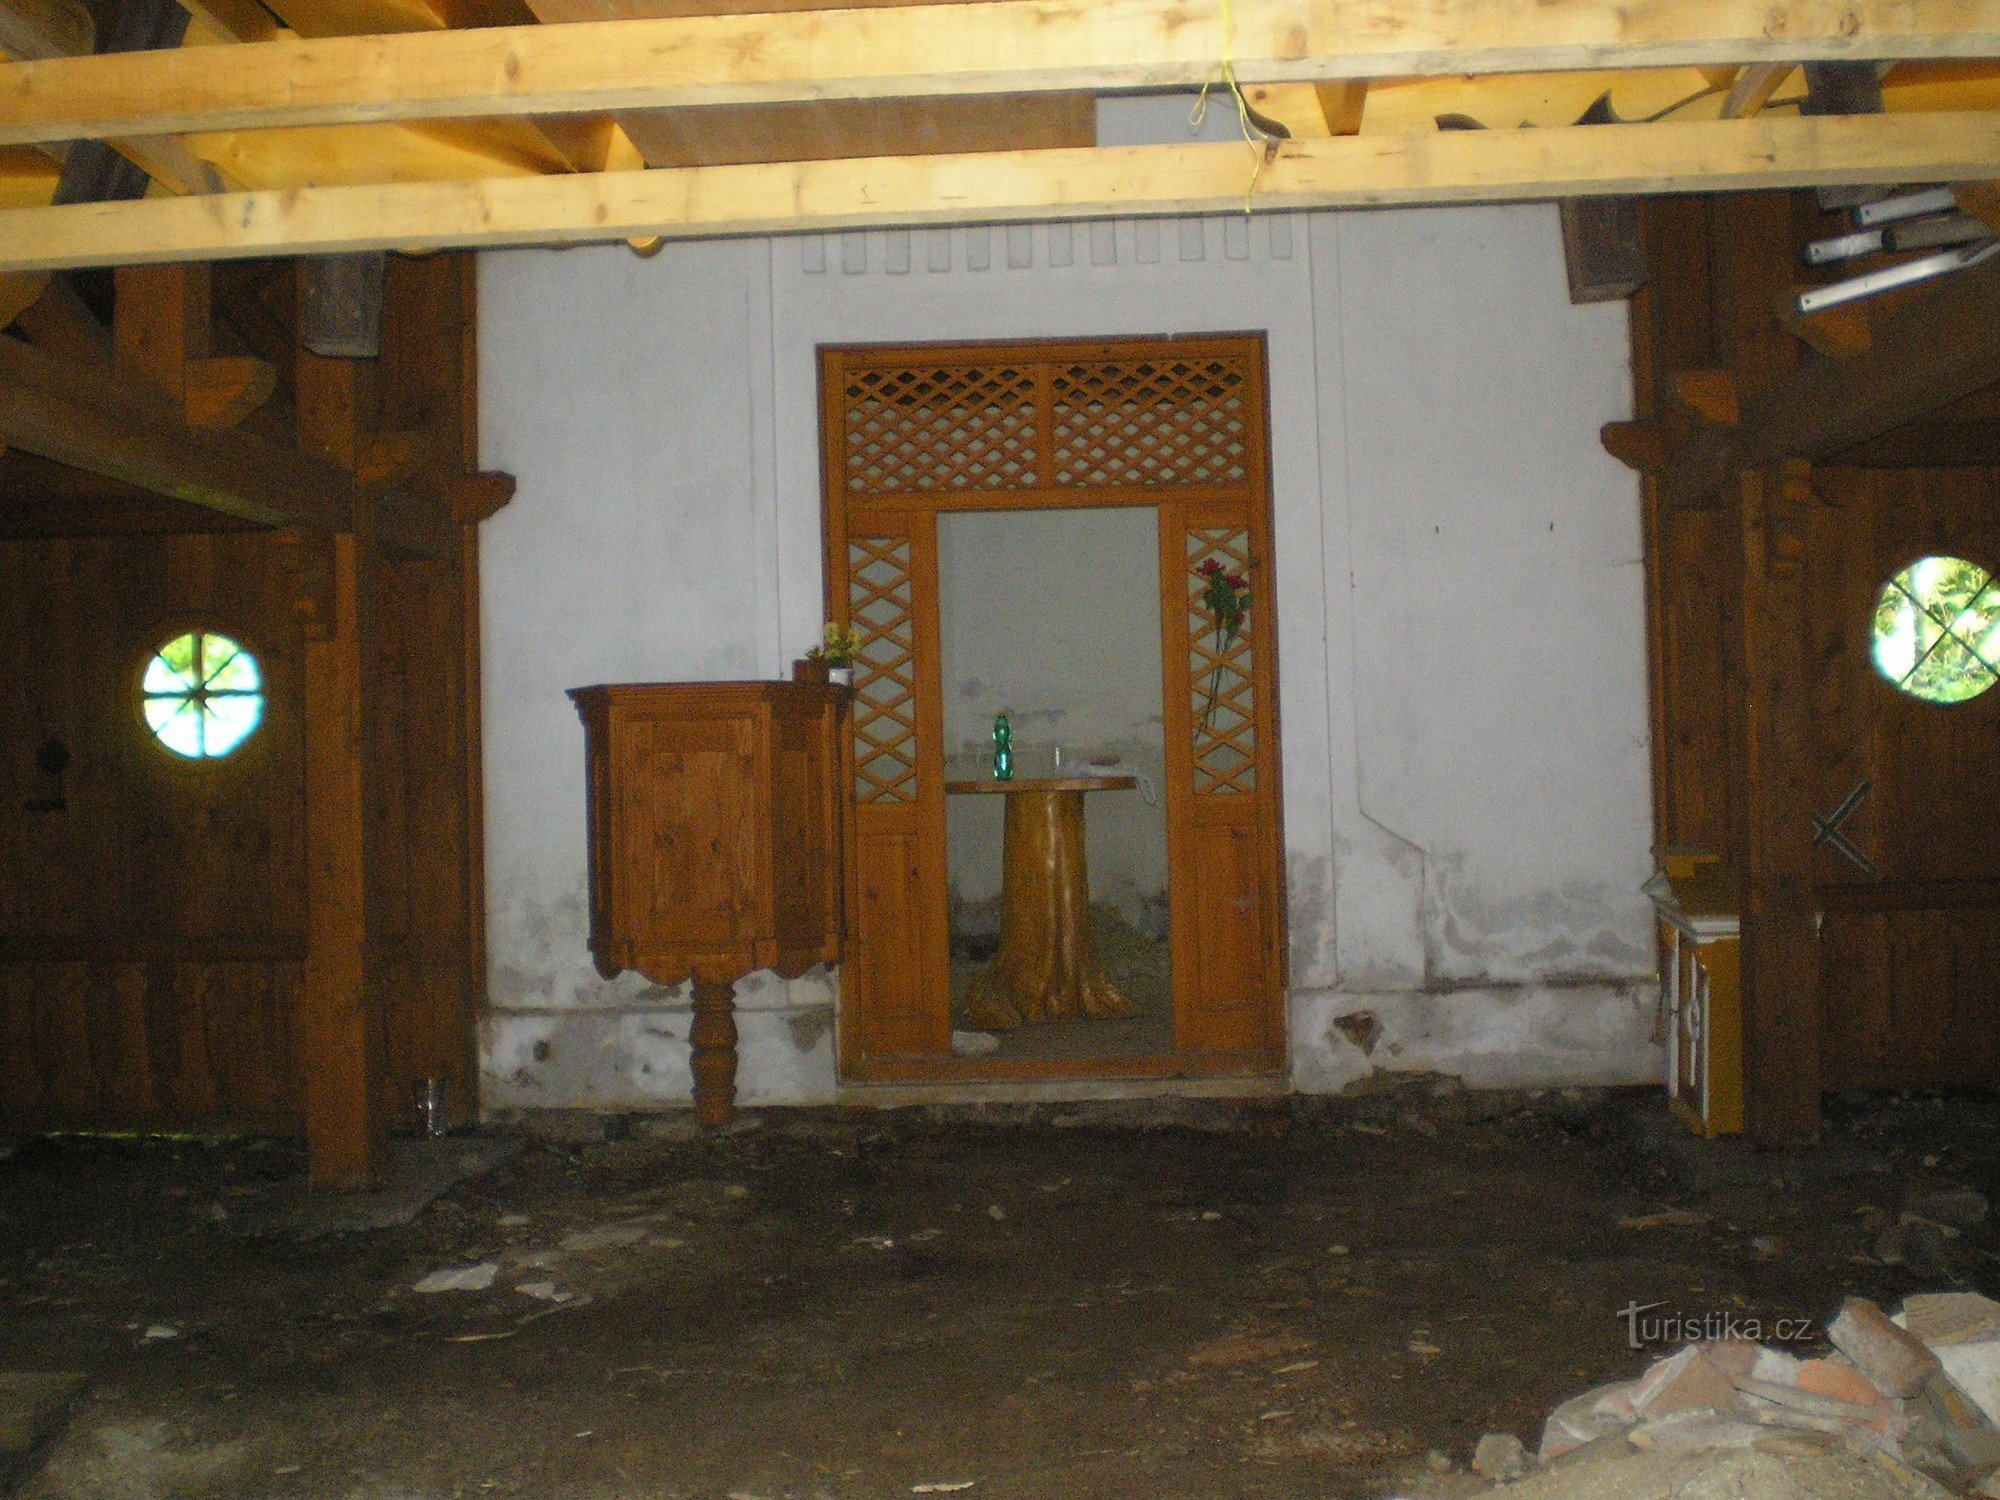 Het interieur van de kapel - nu in reconstructie